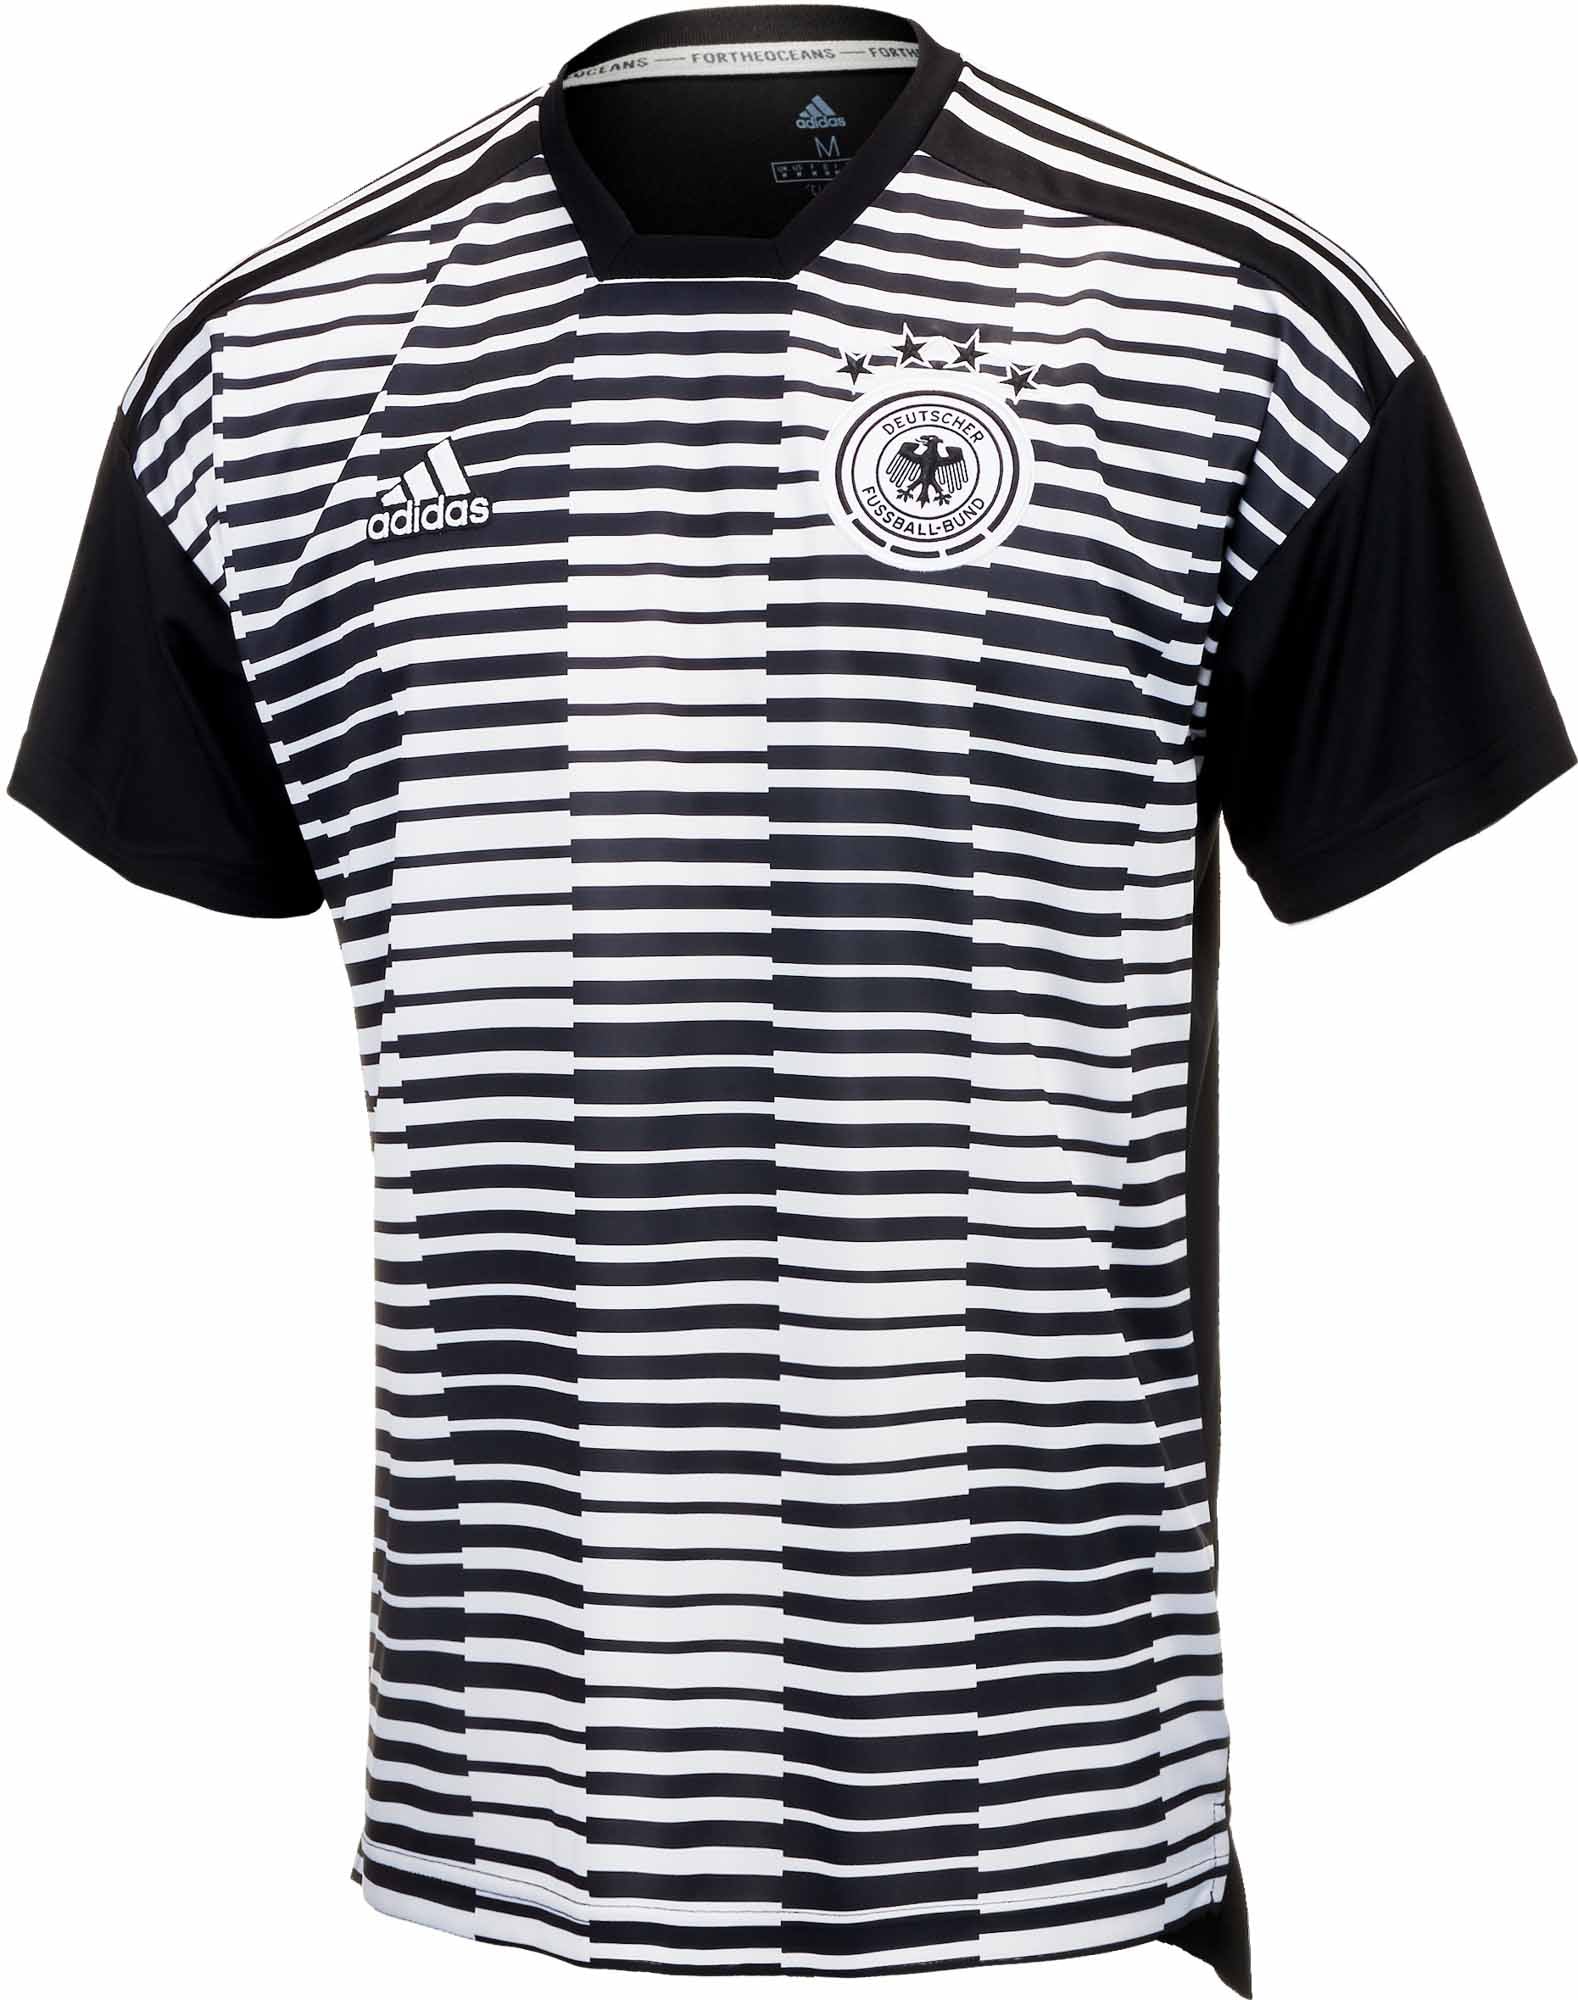 Afrekenen Integraal Groene bonen Adidas Germany Pre-match Jersey – White & Black CE6632 – Mann Sports Outlet